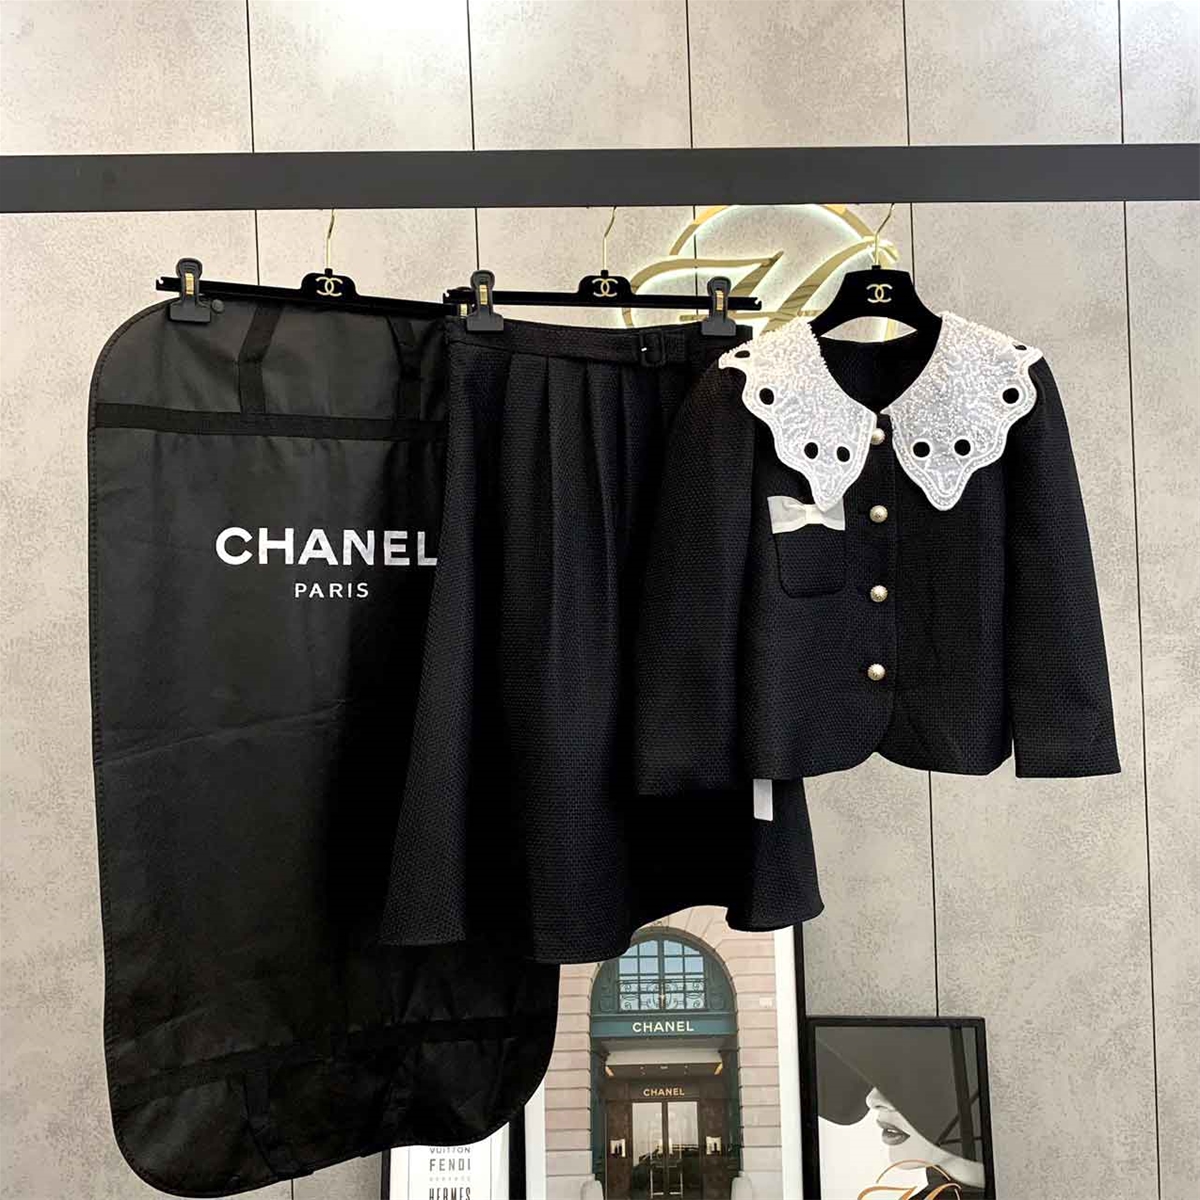 Set váy dạ ngắn cổ trắng hiệu Chanel siêu cấp